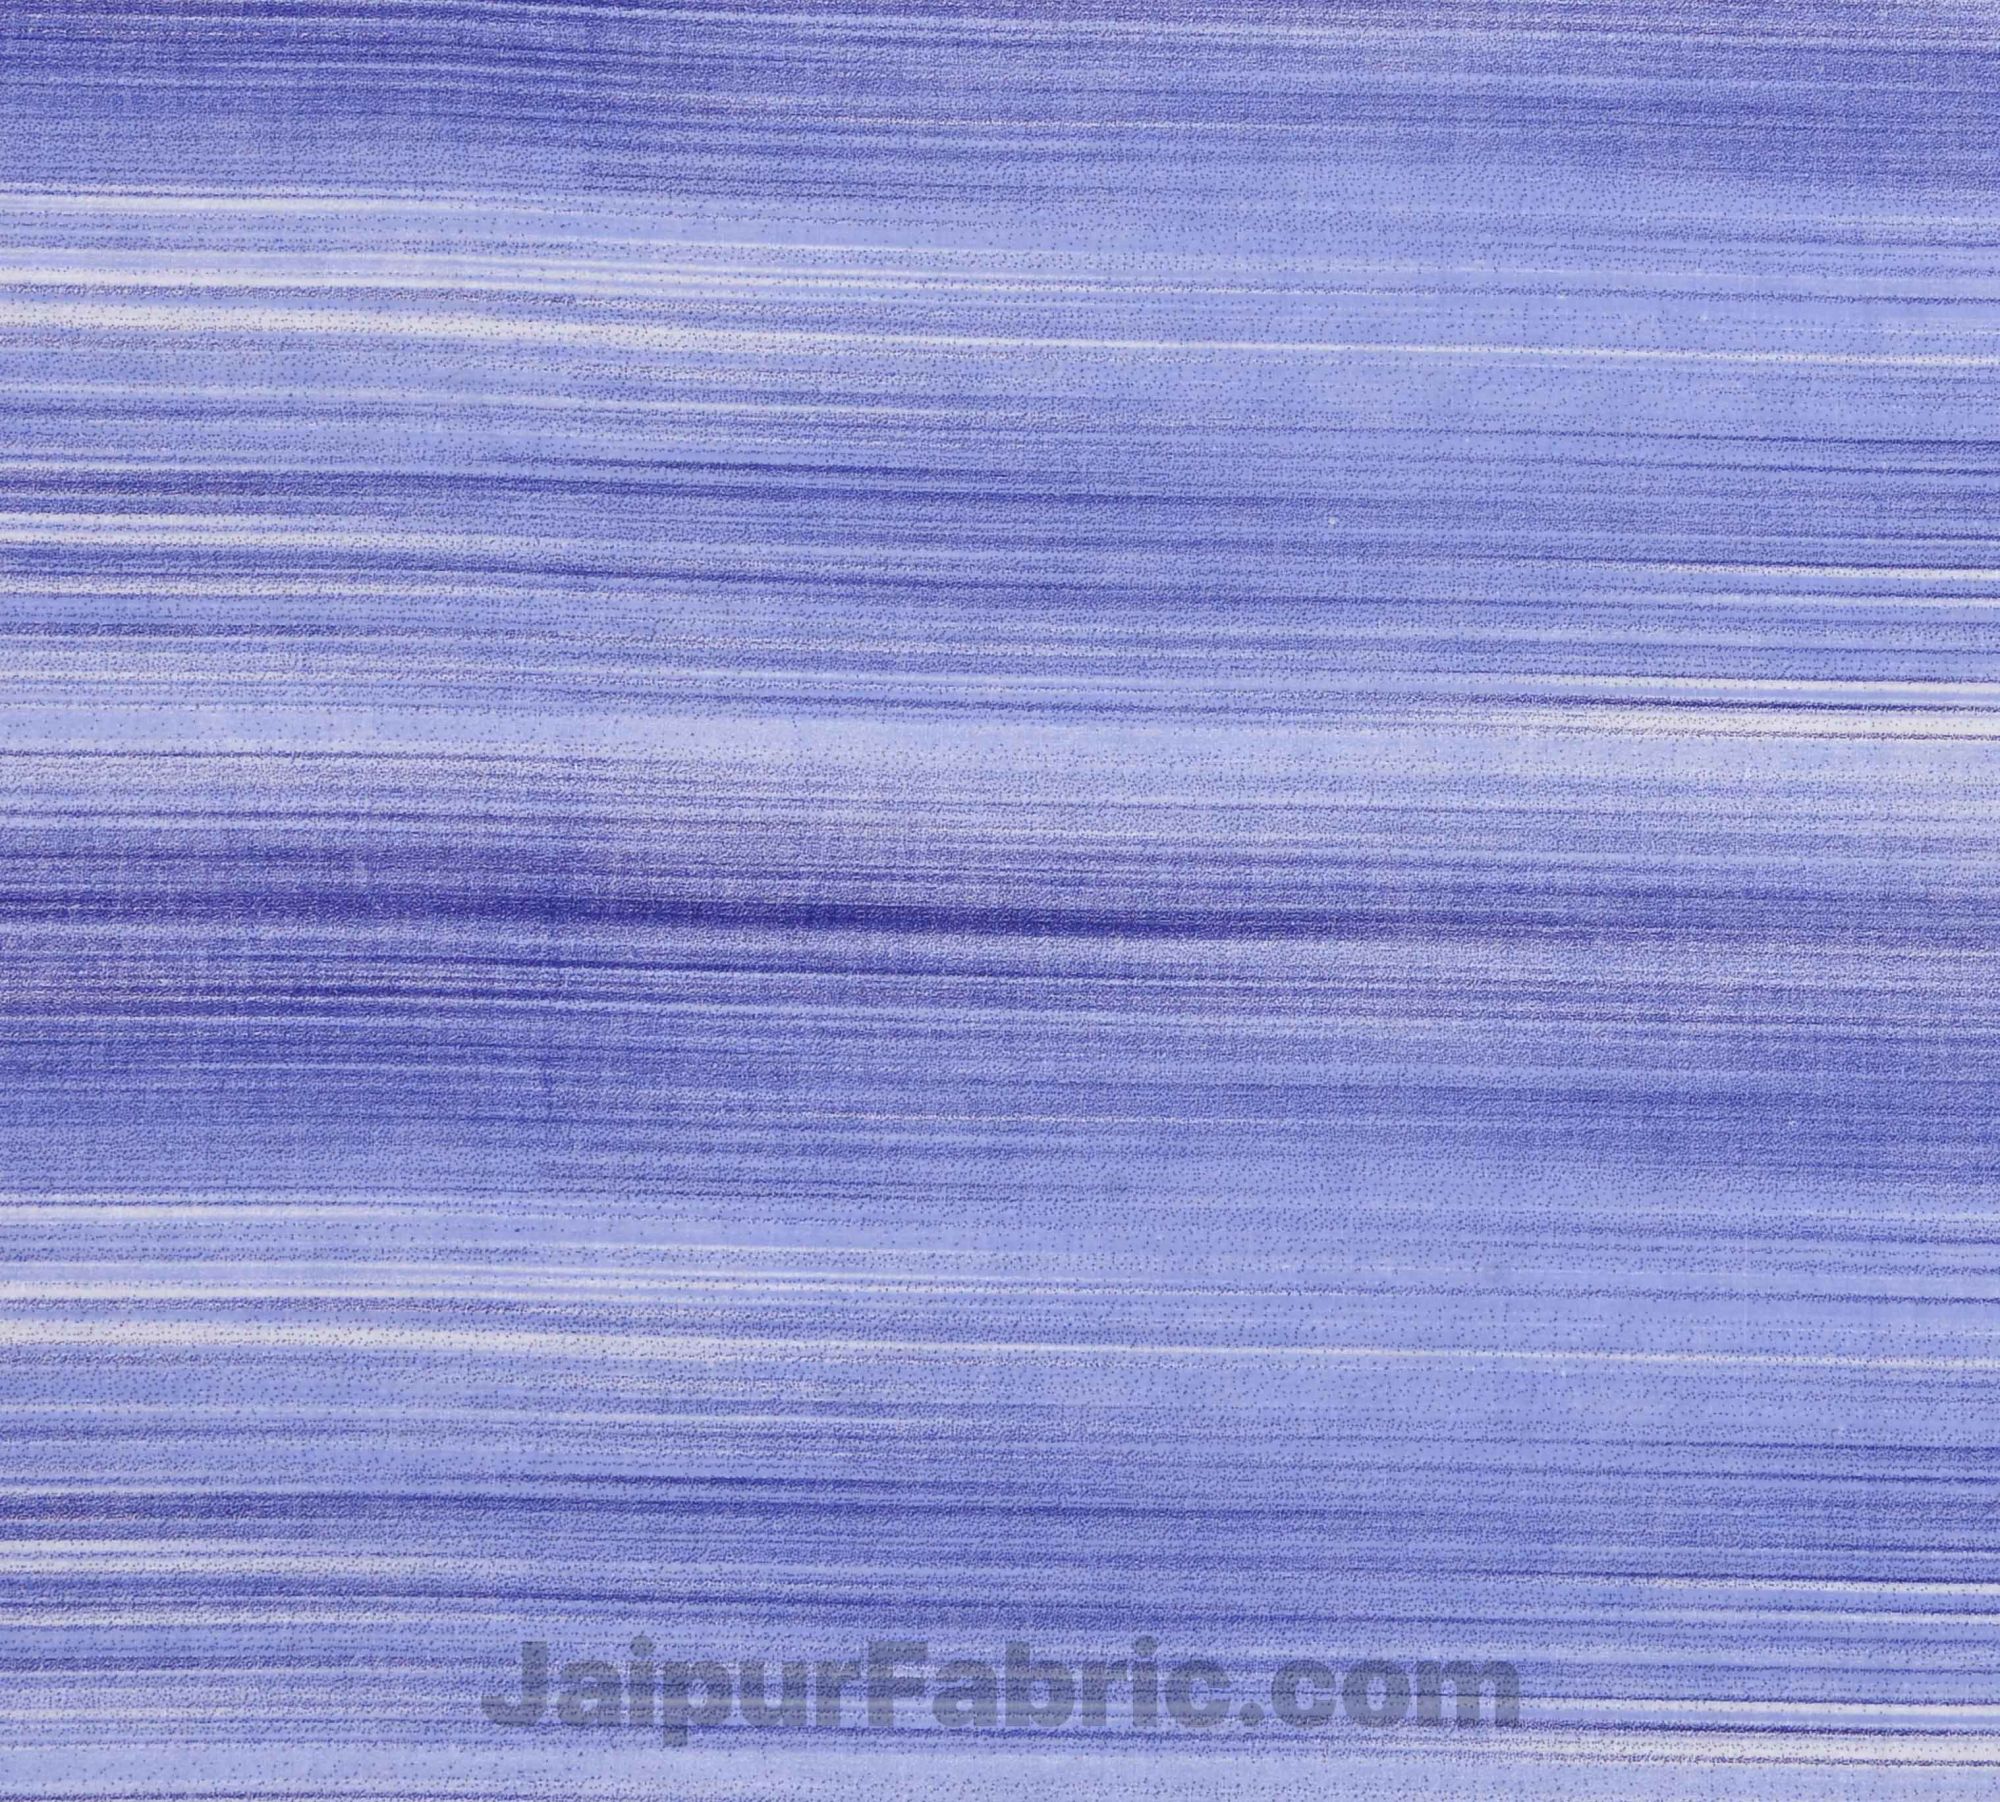 Pure Cotton Multi Blue Star Reversible Double Blanket/Duvet/Quilt/AC Dohar